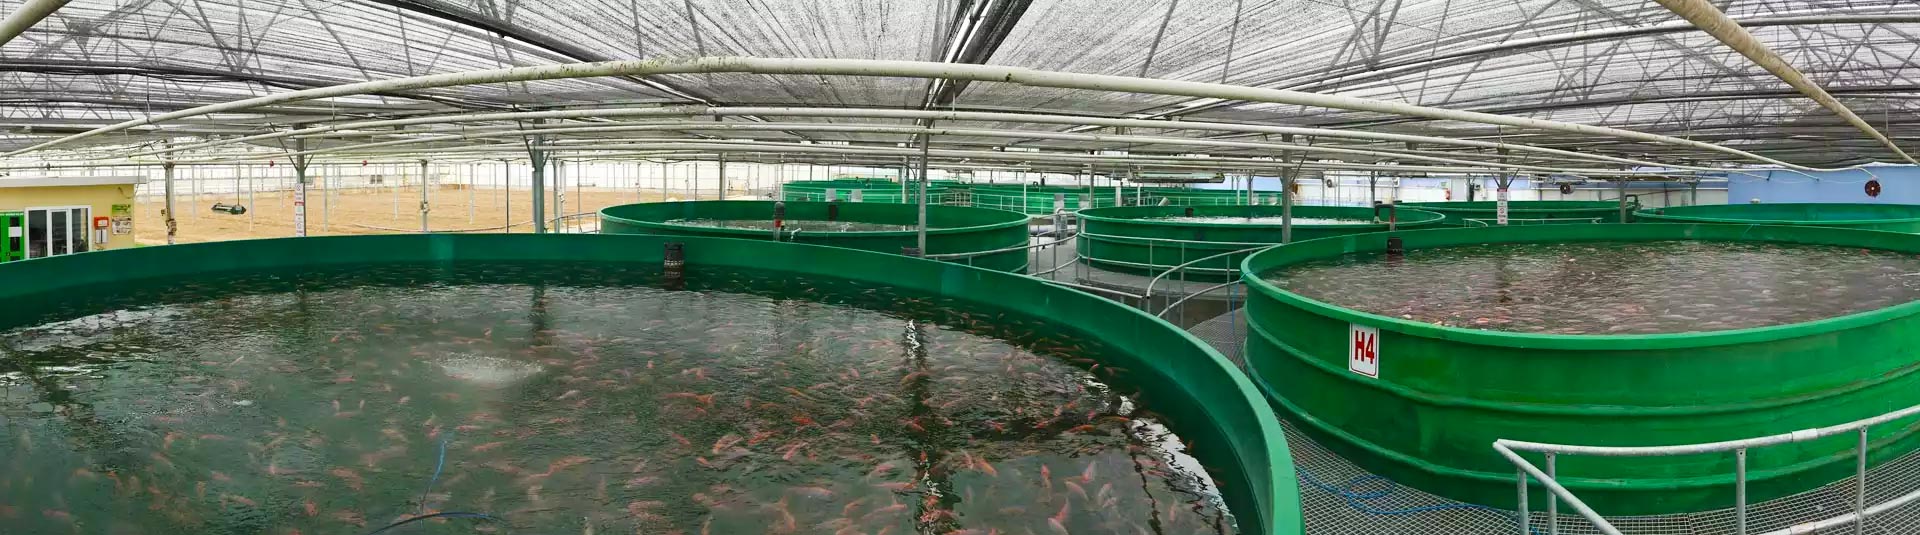 منشأة إنتاج الأسماك